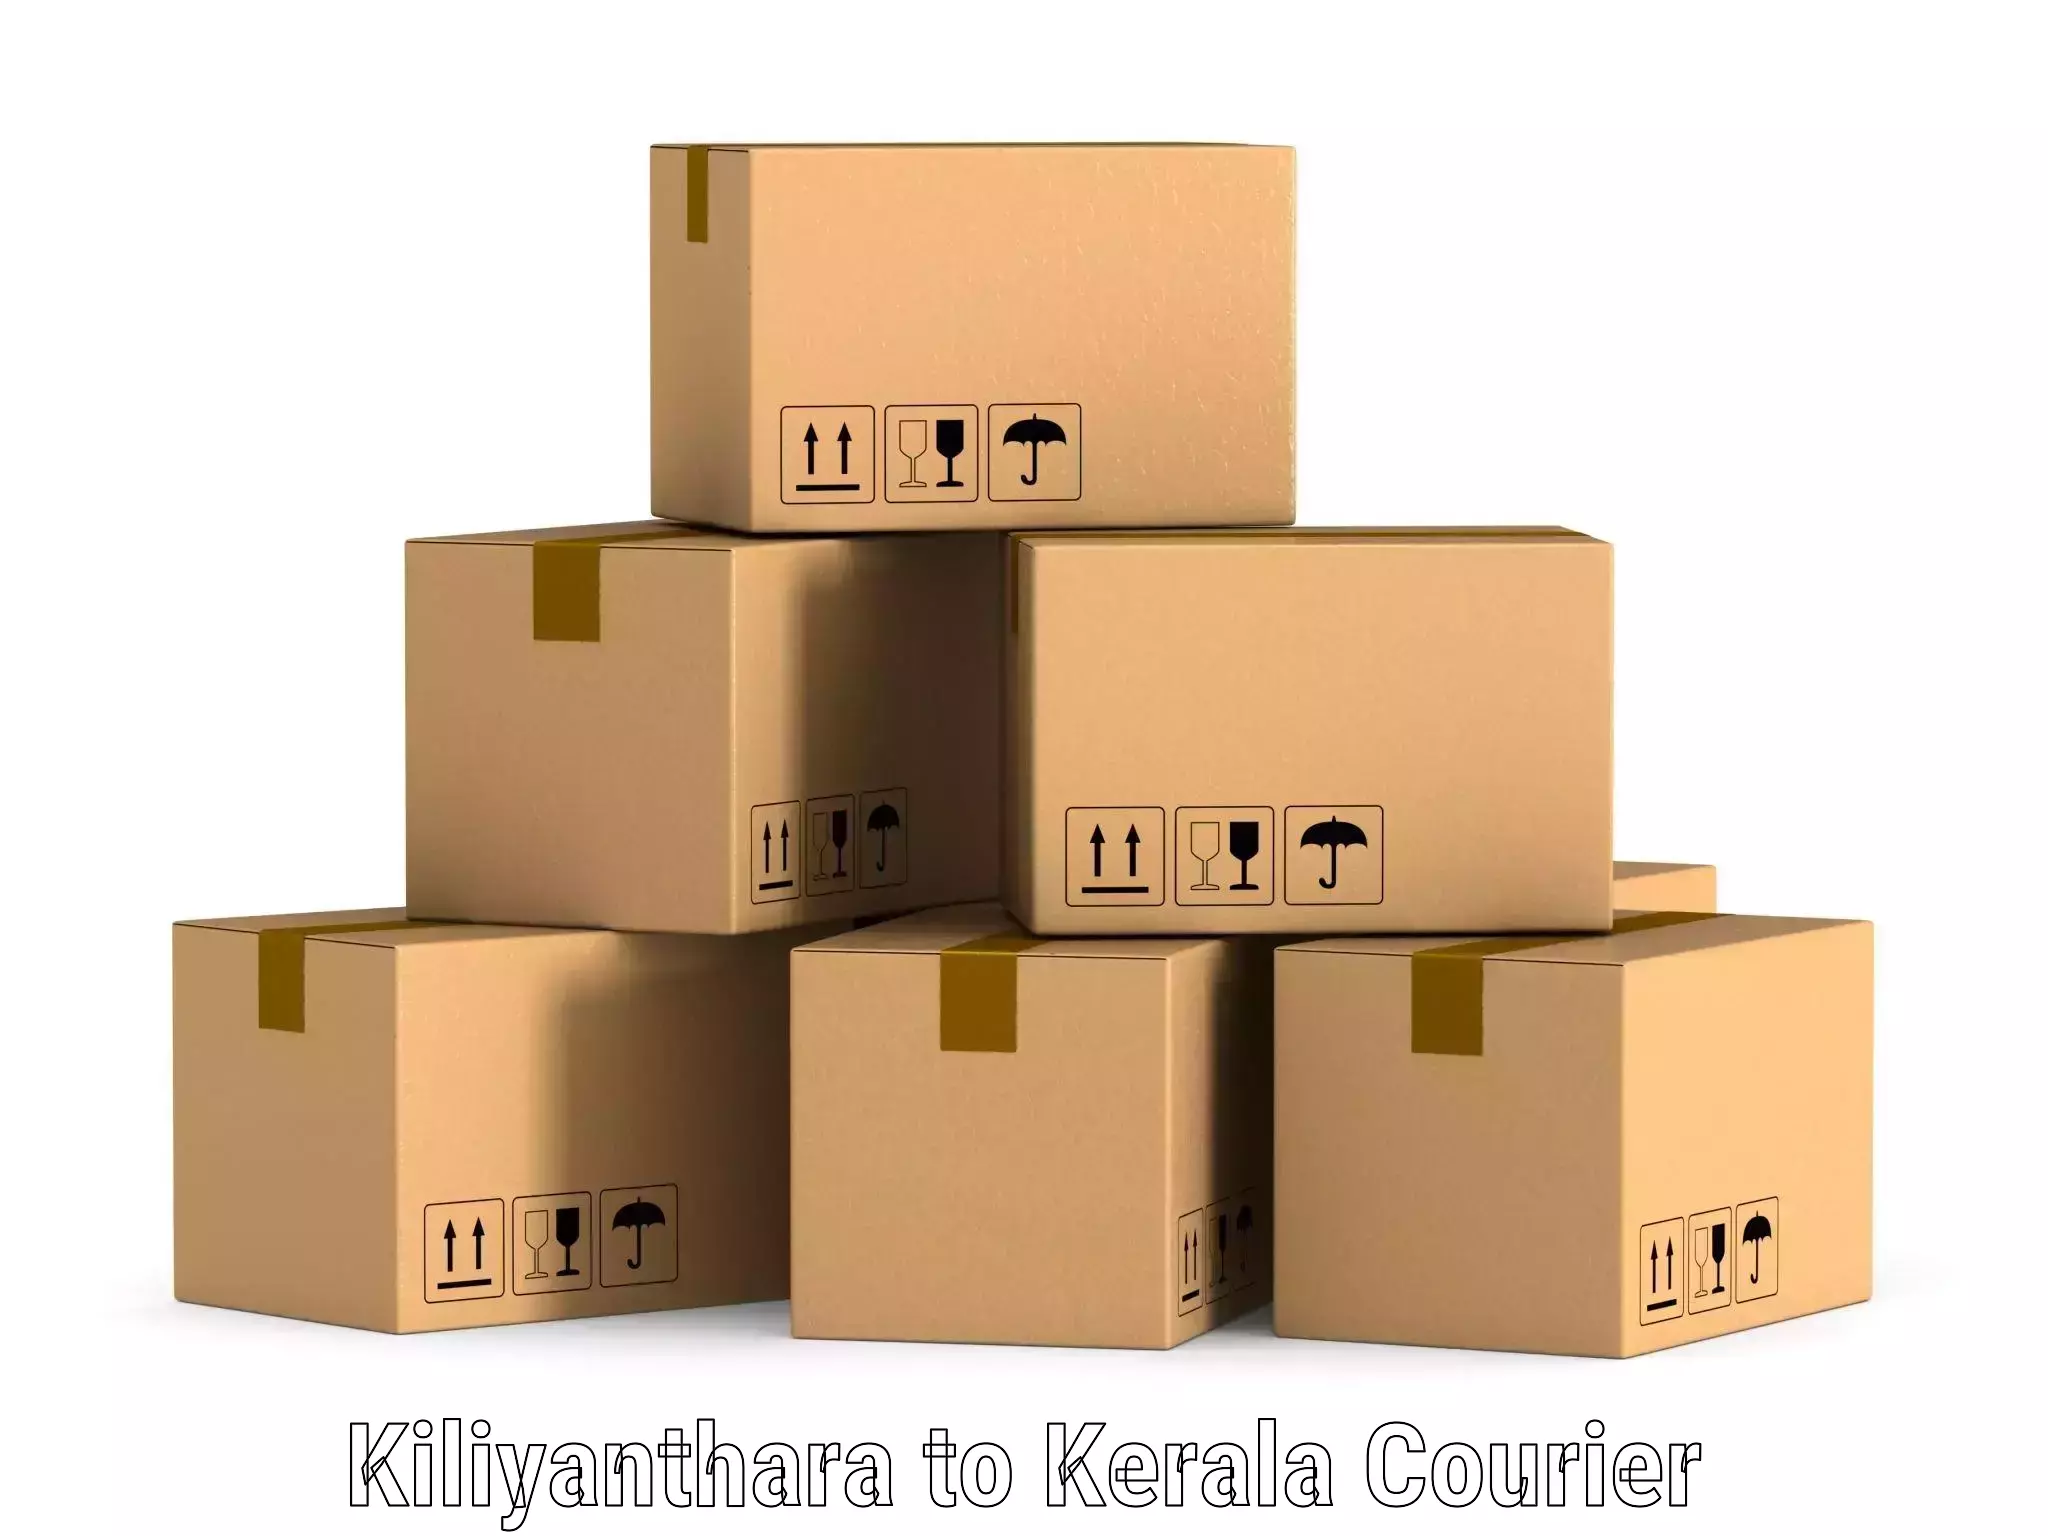 Express postal services Kiliyanthara to Kerala